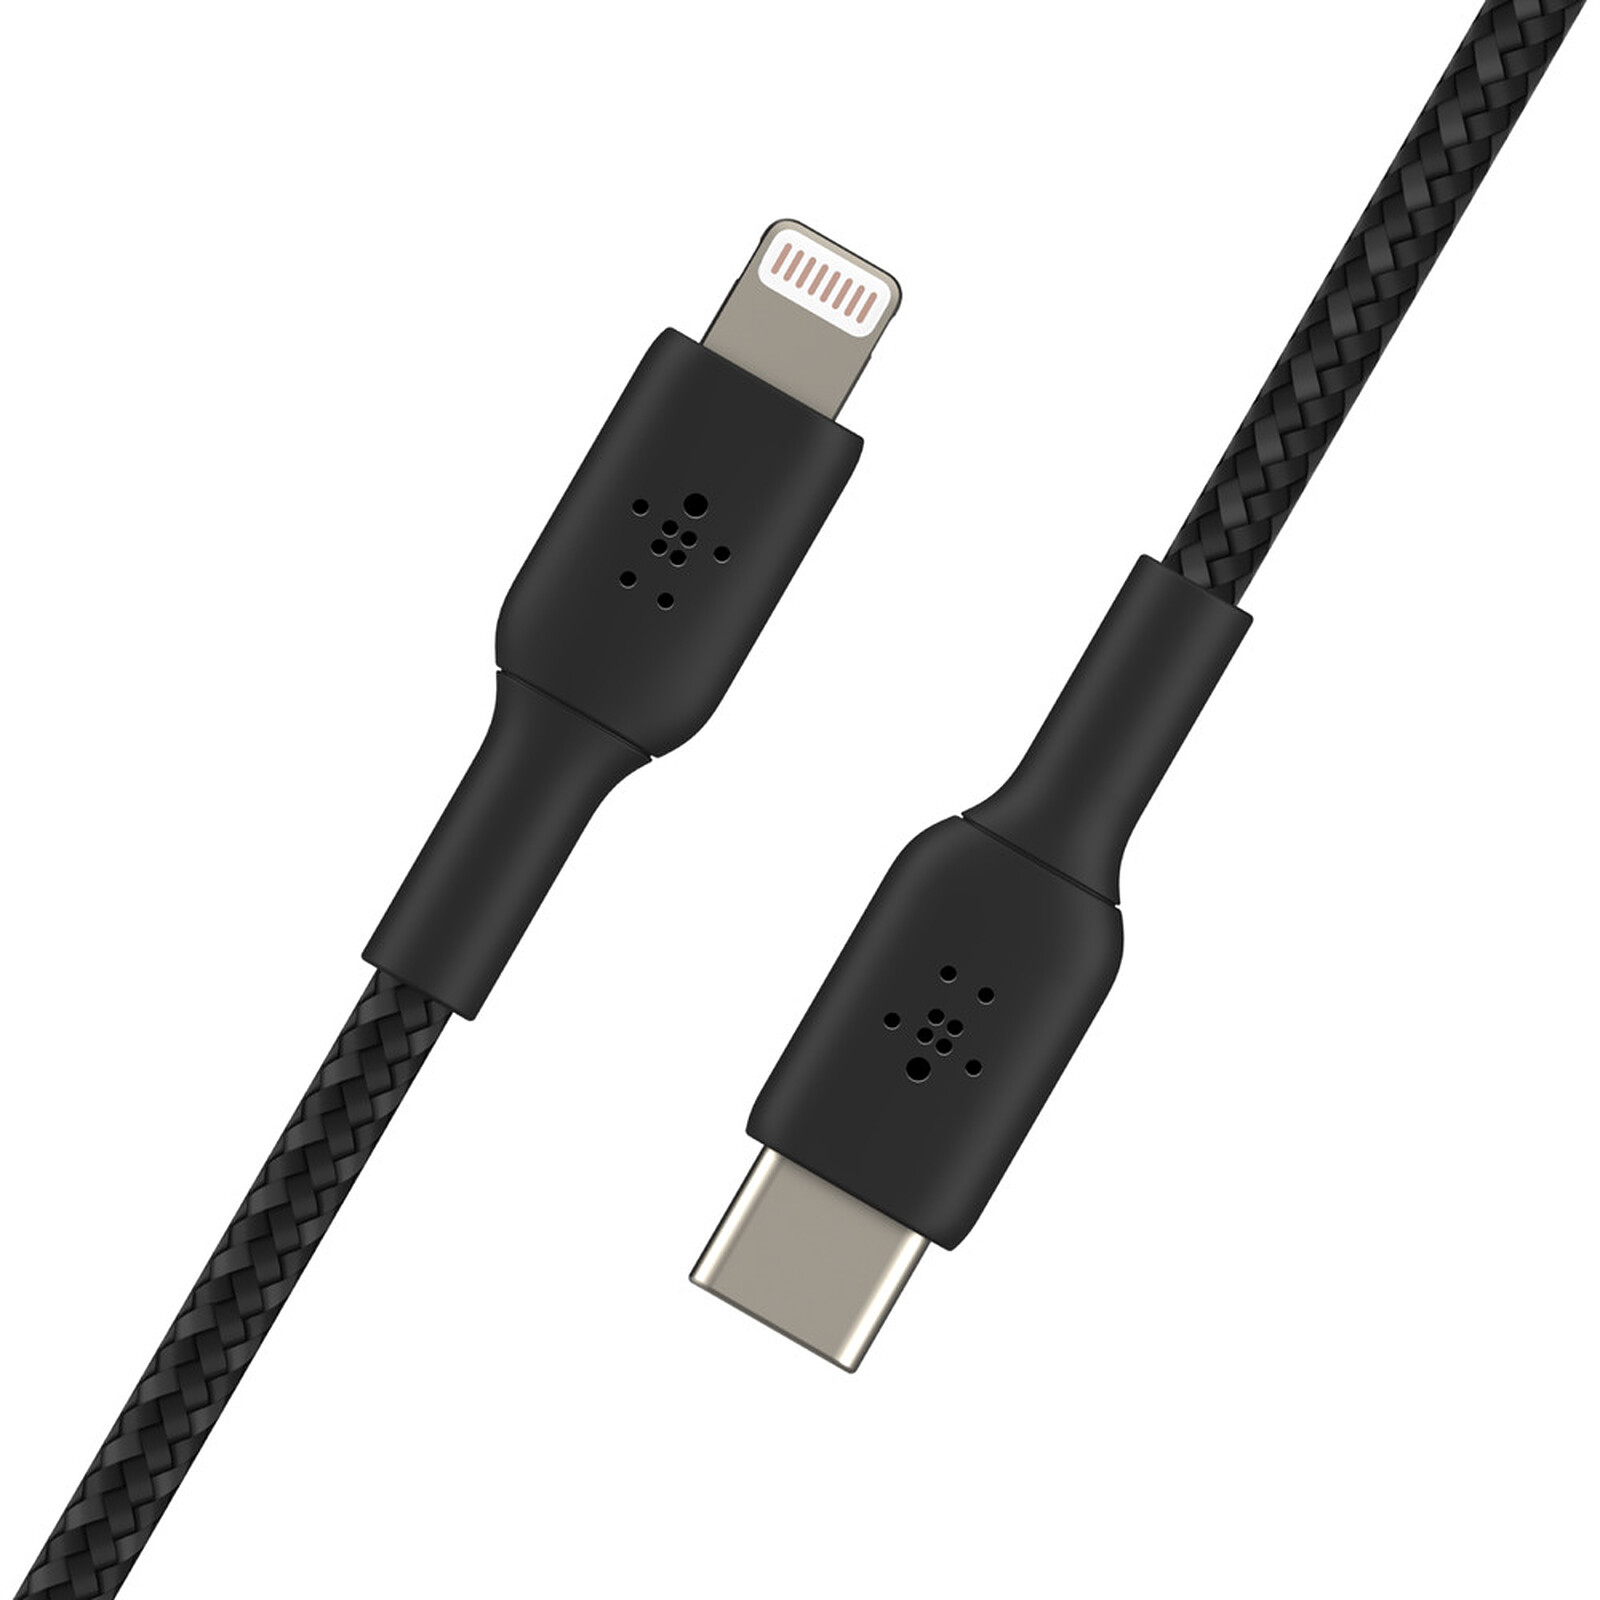 CABLE USB/USB-C 2M NOIR